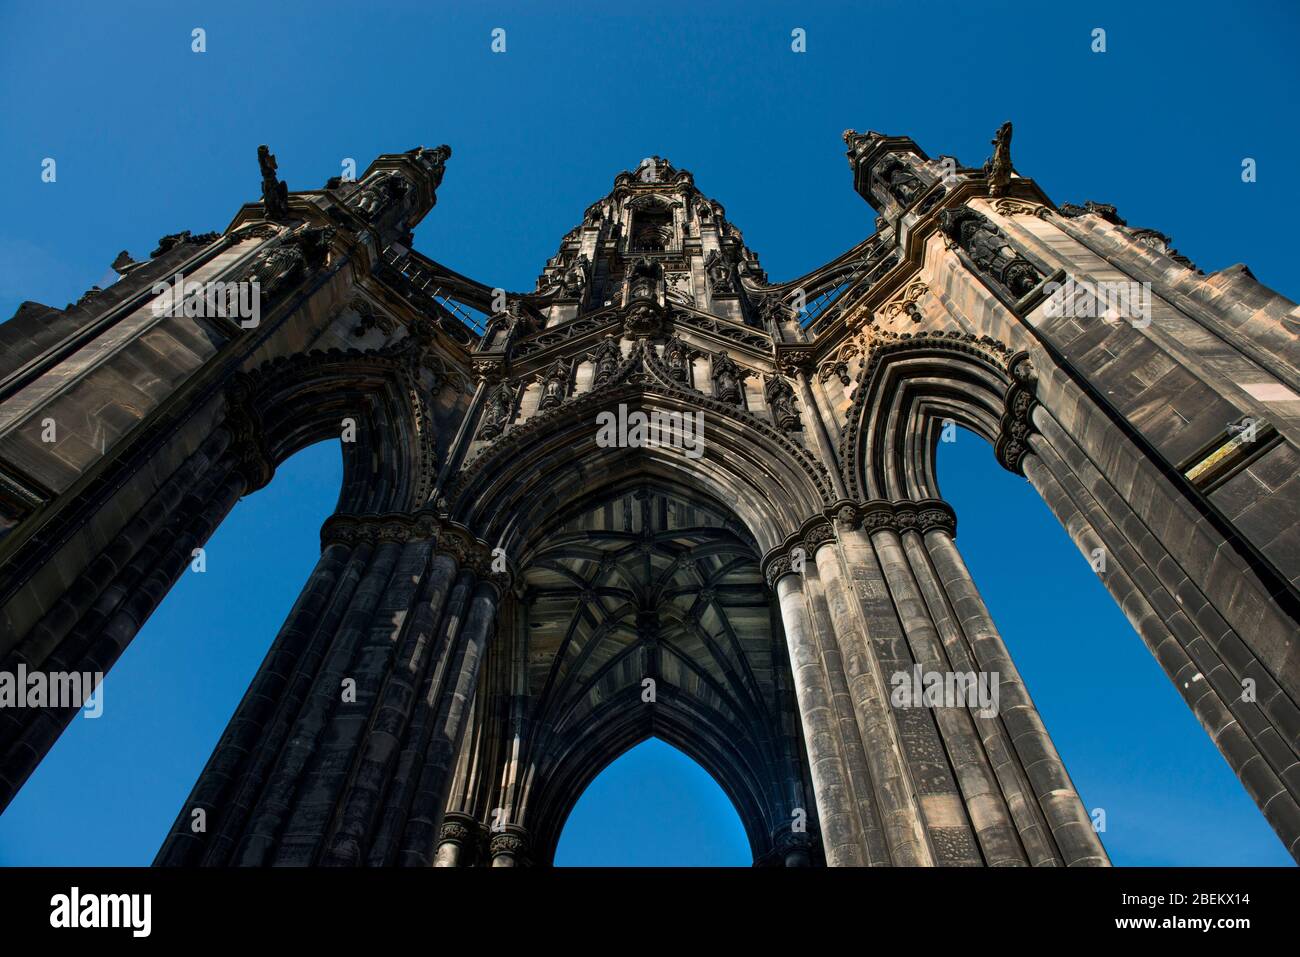 Edimburgo, Midlothian, Scozia, Regno Unito Edimburgo è la capitale della Scozia e considerata una delle città più belle del mondo. Foto Stock